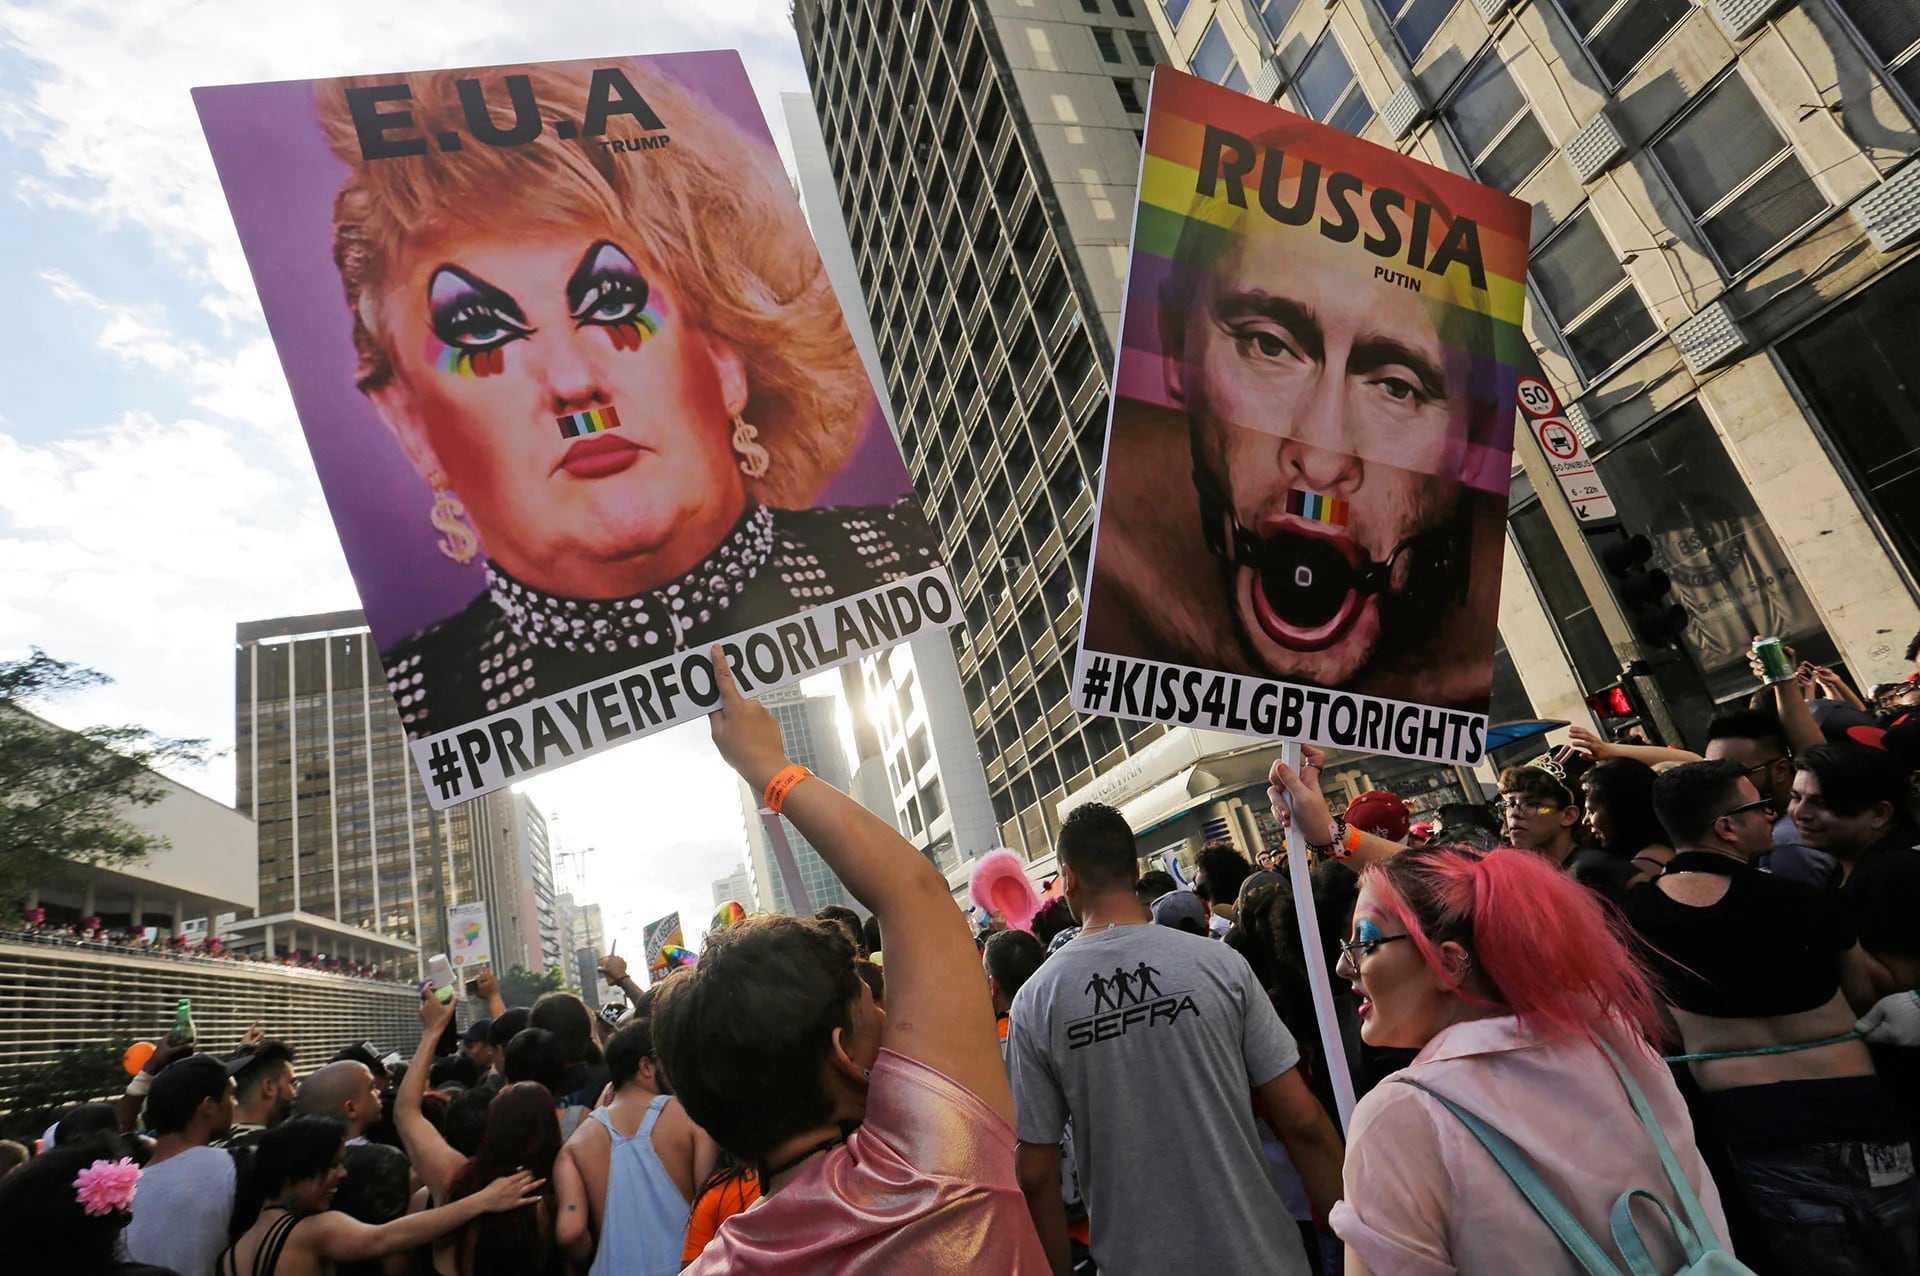 Los manifestantes llevaron imágenes modificadas del presidente estadounidense, Donald Trump, y del mandatario ruso, Vladimir Putin, a quienes acusan de homofóbicos